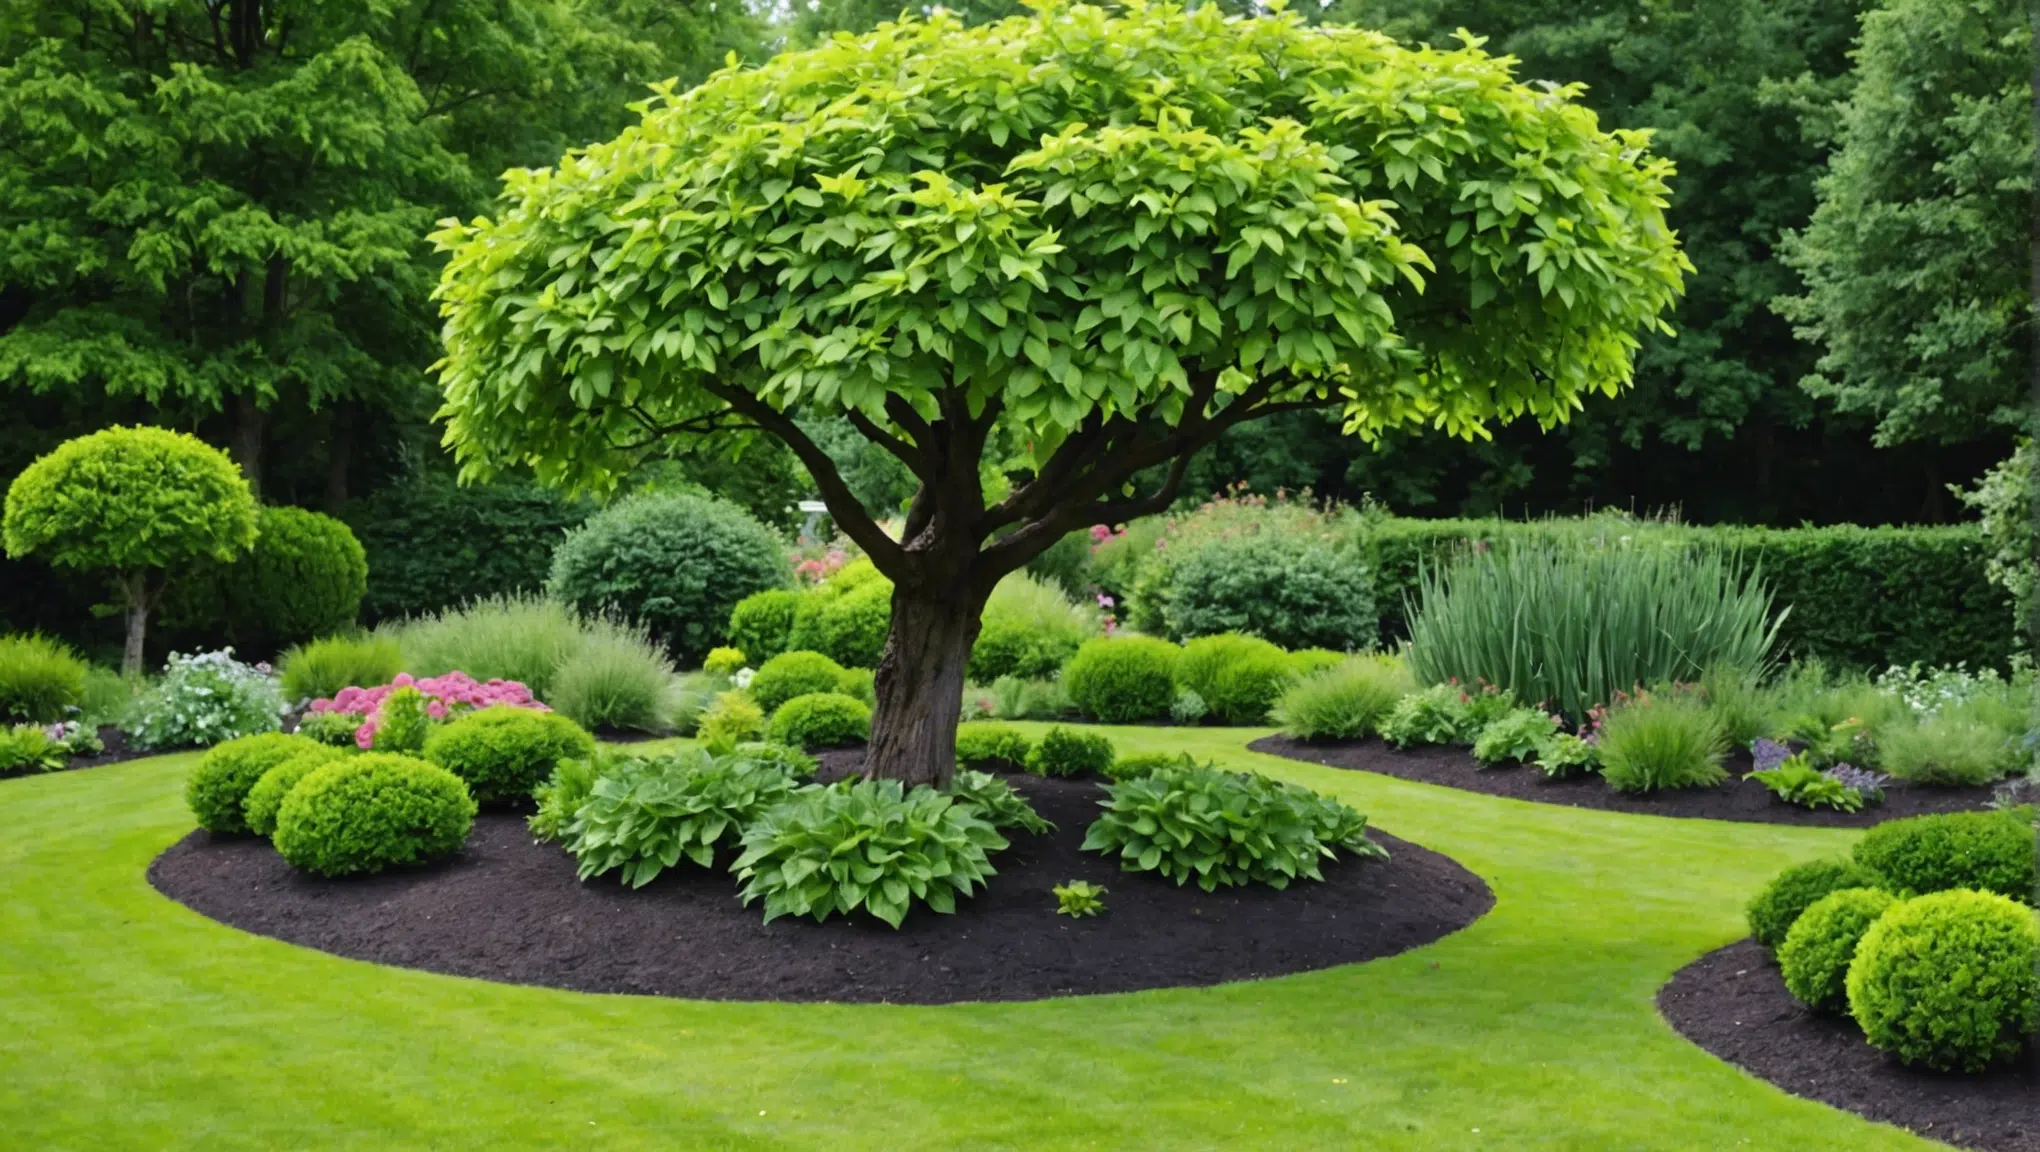 découvrez les meilleurs conseils pour aménager votre jardin avec trestresnadia.fr. profitez des astuces et inspirations pour sublimer votre espace extérieur.